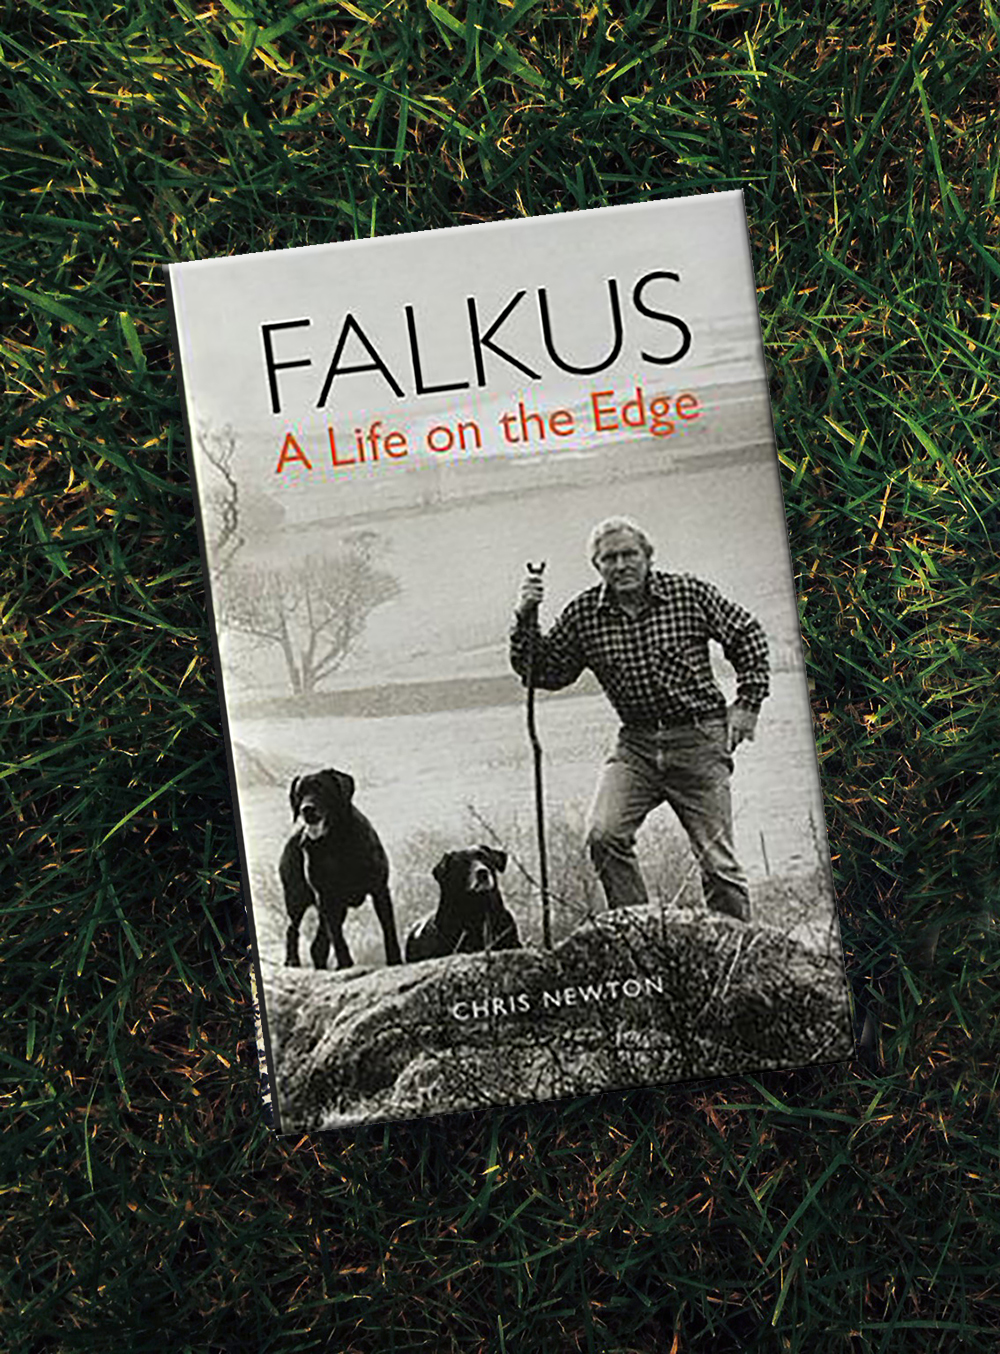 Hugh Falkus: A Life on the Edge. By Chris Newton – Fallons Angler